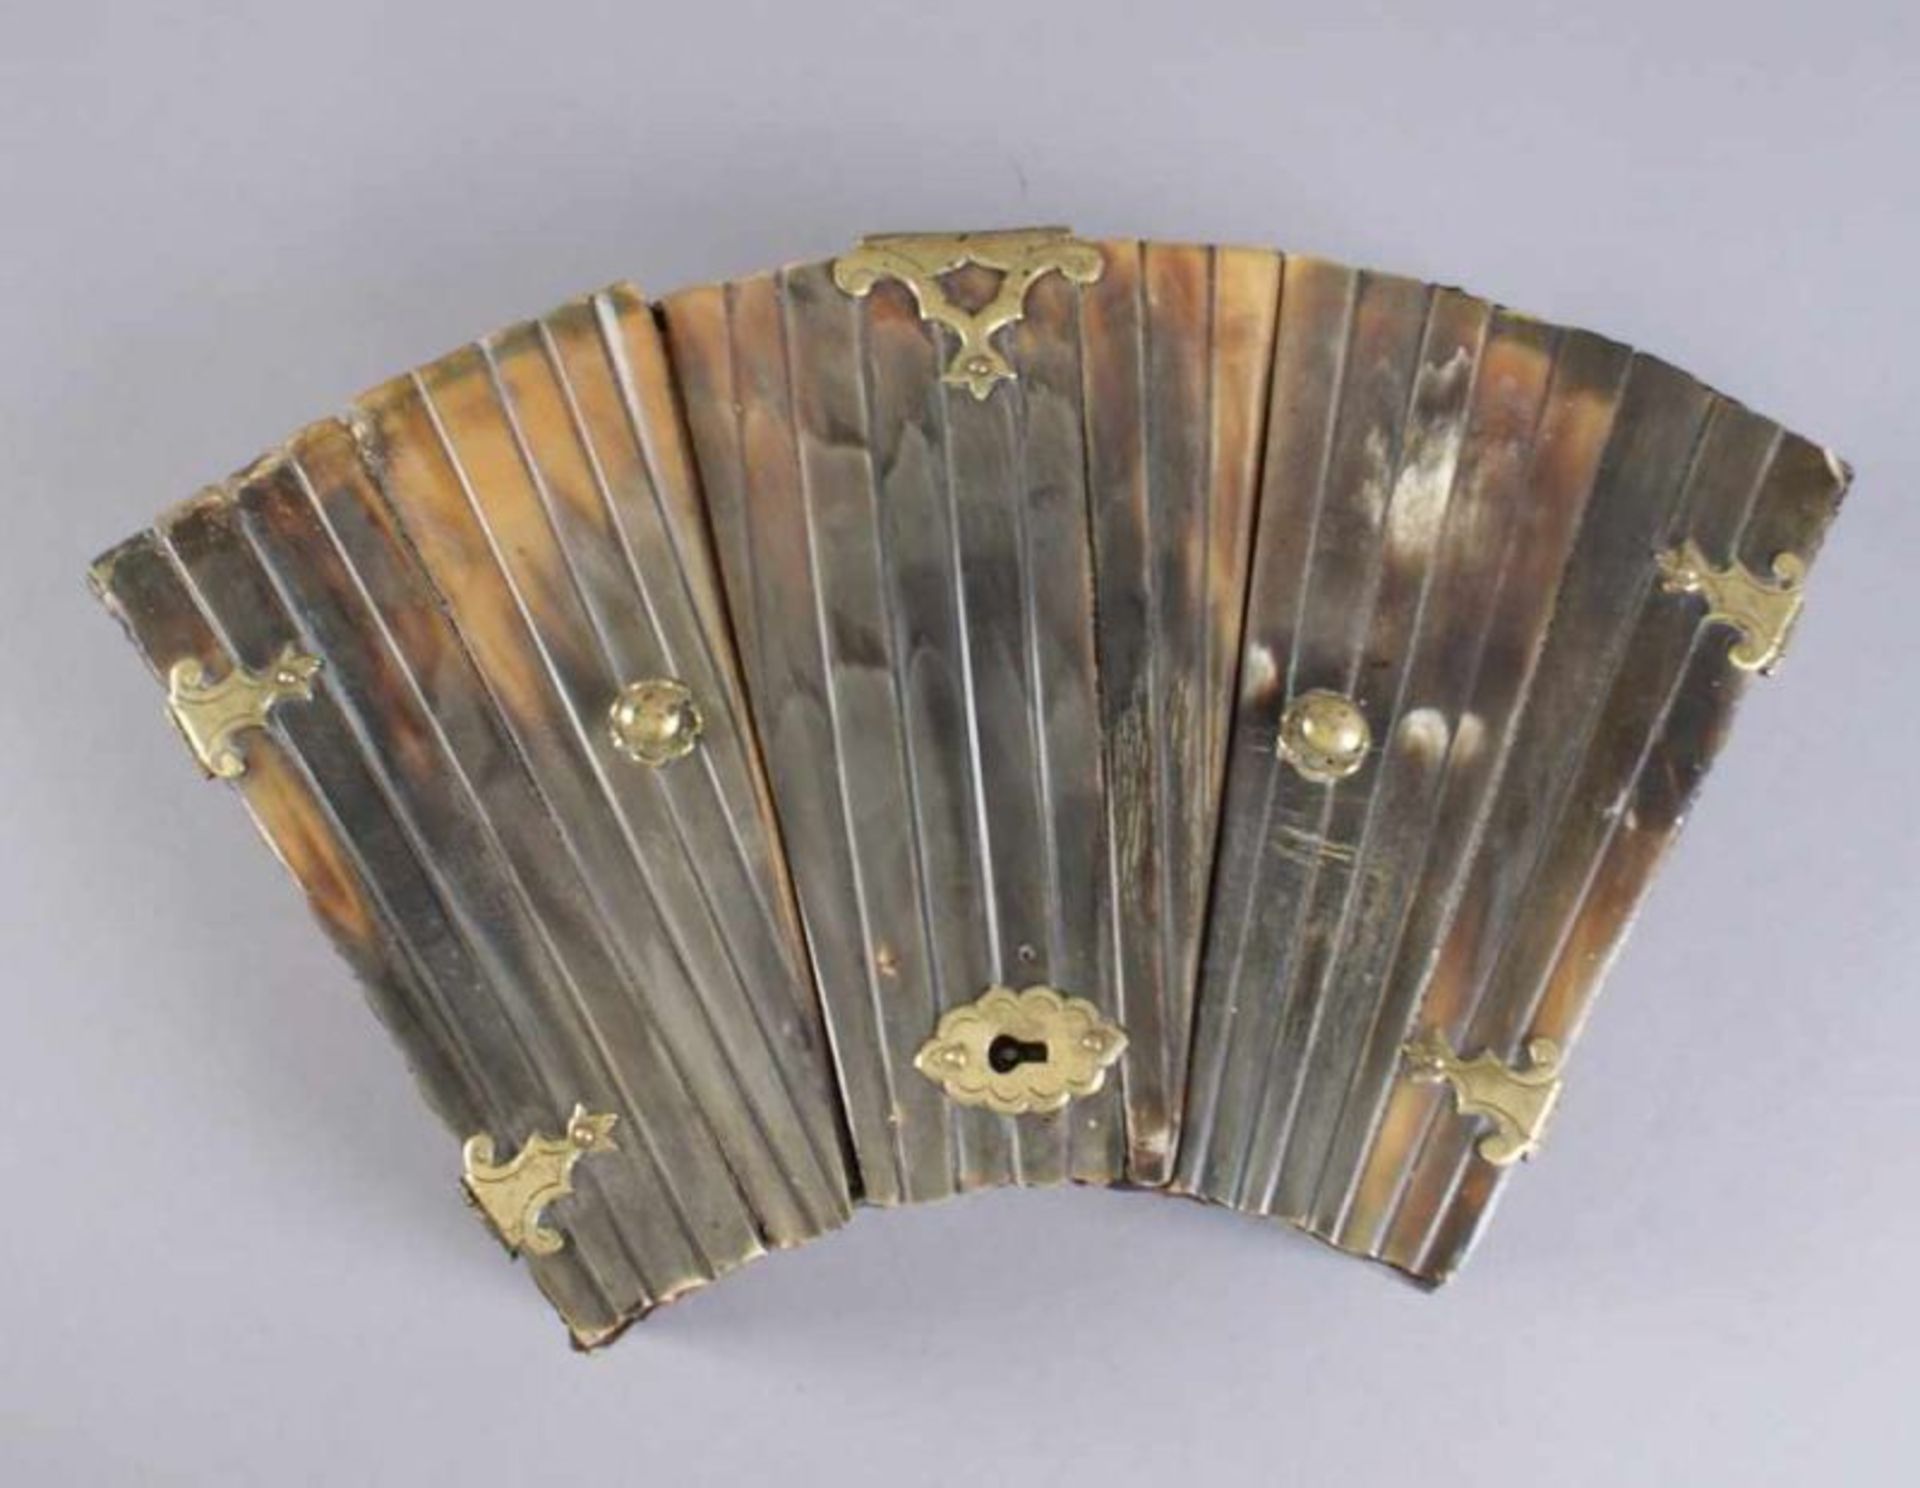 Fächerförmige Schatulle, Holzkorpus mit Walrossknochen besetzt, 17. JH, 6x33x18 cm 20.17 % buyer's